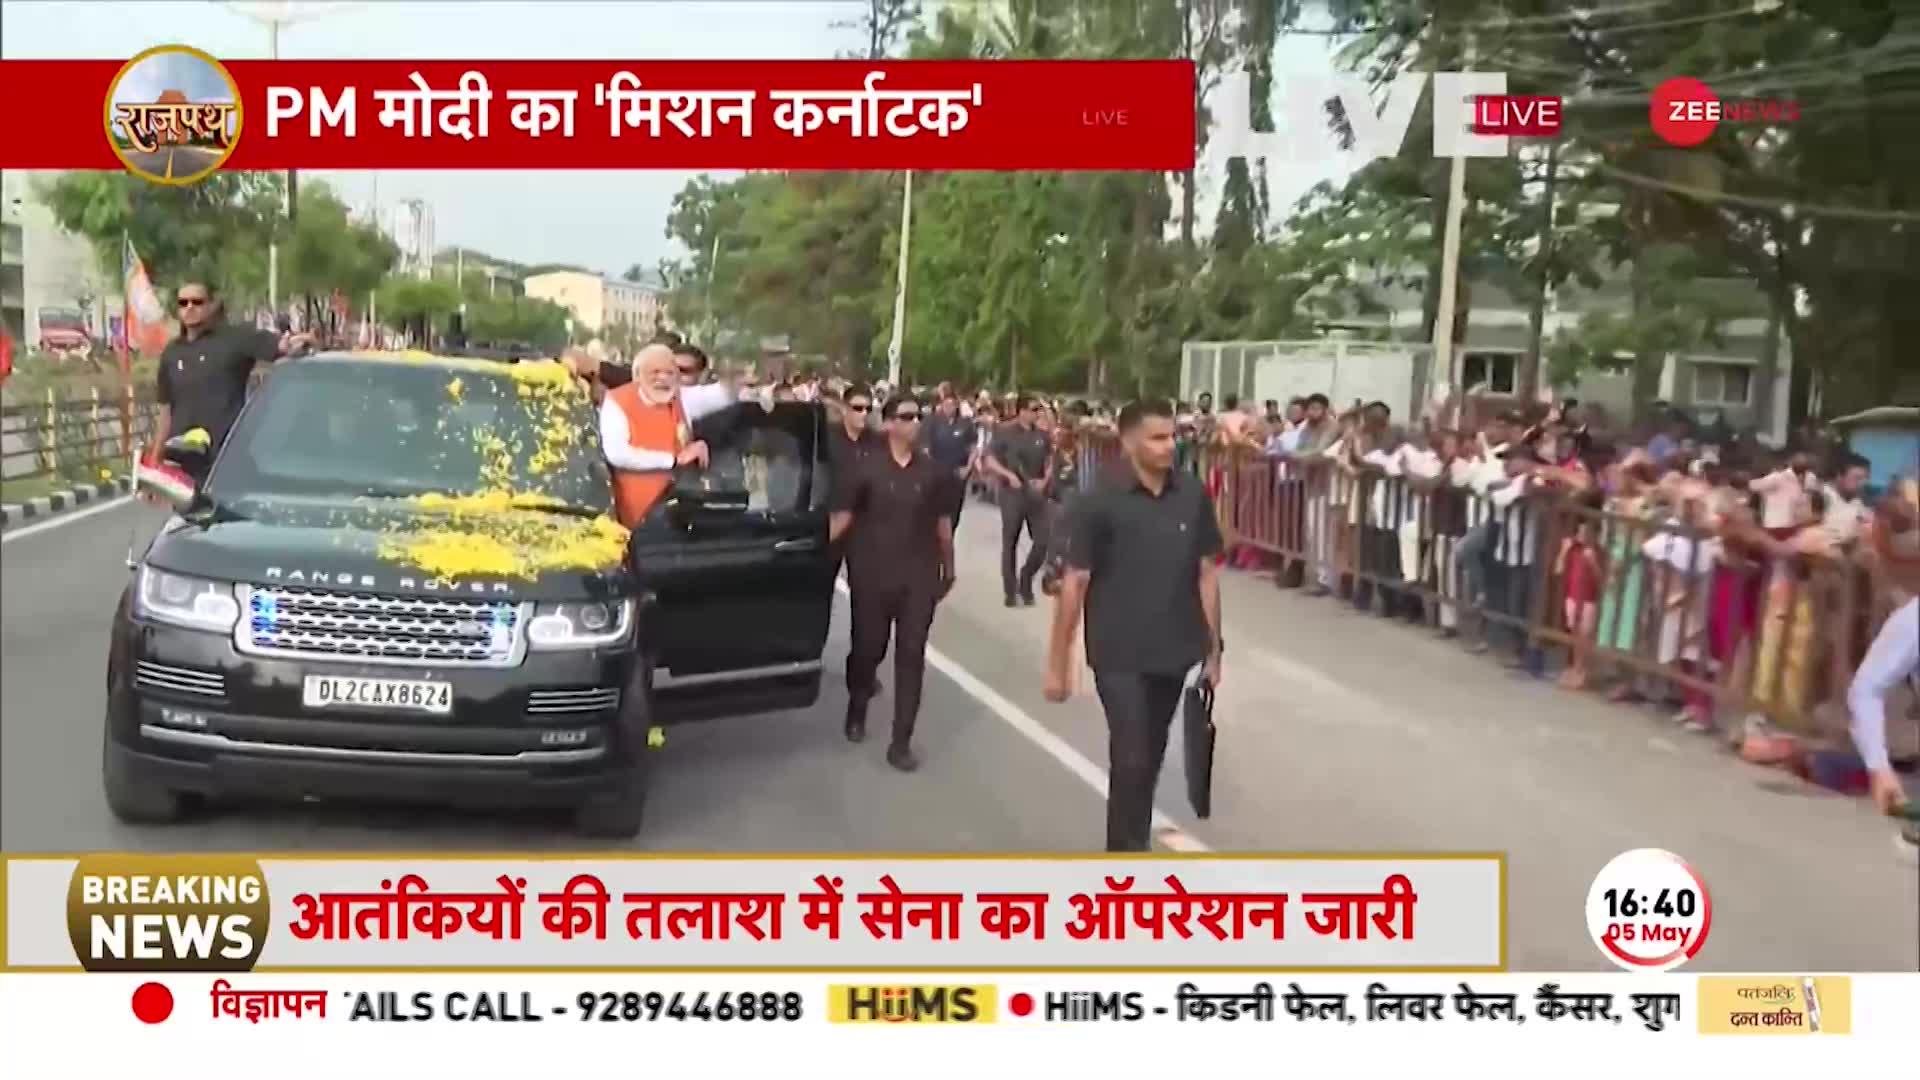 PM Modi Roadshow: कर्नाटक में पीएम मोदी का रोड शो, सड़कों पर उमड़ा लोगों का हुजूम